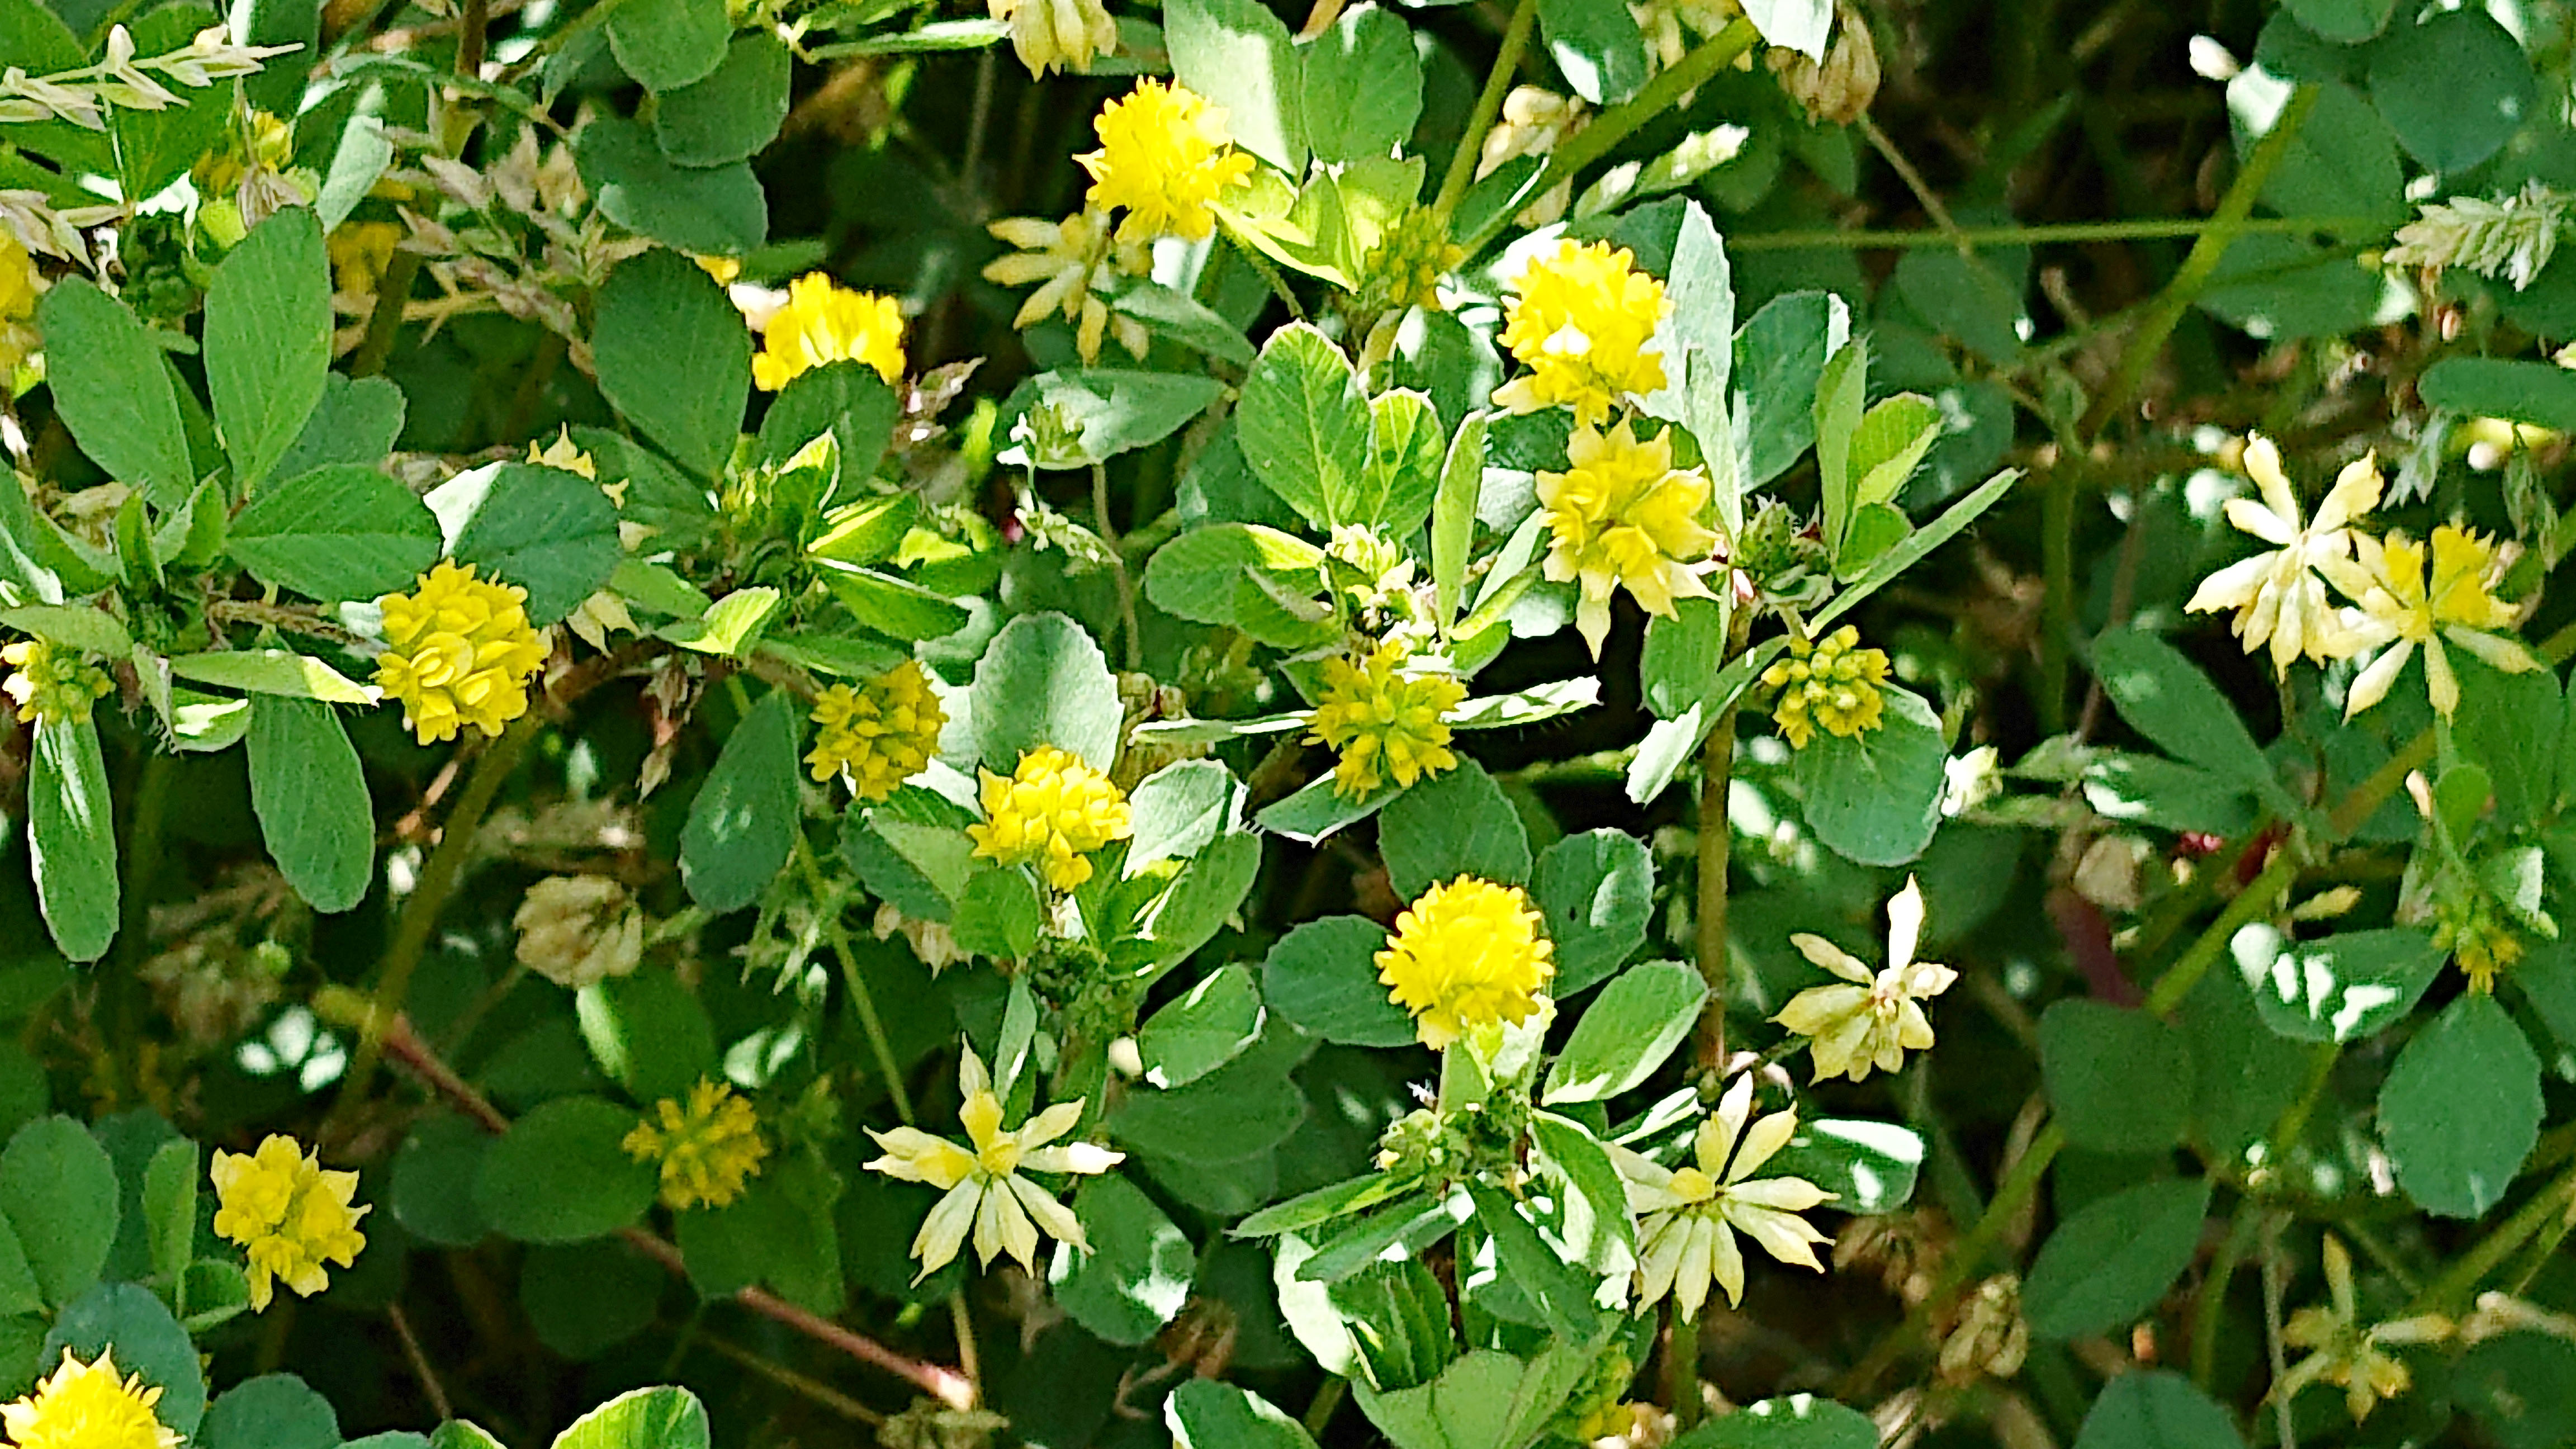 ご近所の草花 道端に咲いている小さな黄色い花は何だろう 広島市植物公園の久保さんに聞いてみた まるごとgo 広島市安佐南区 安佐北区あたりの地域情熱ブログ